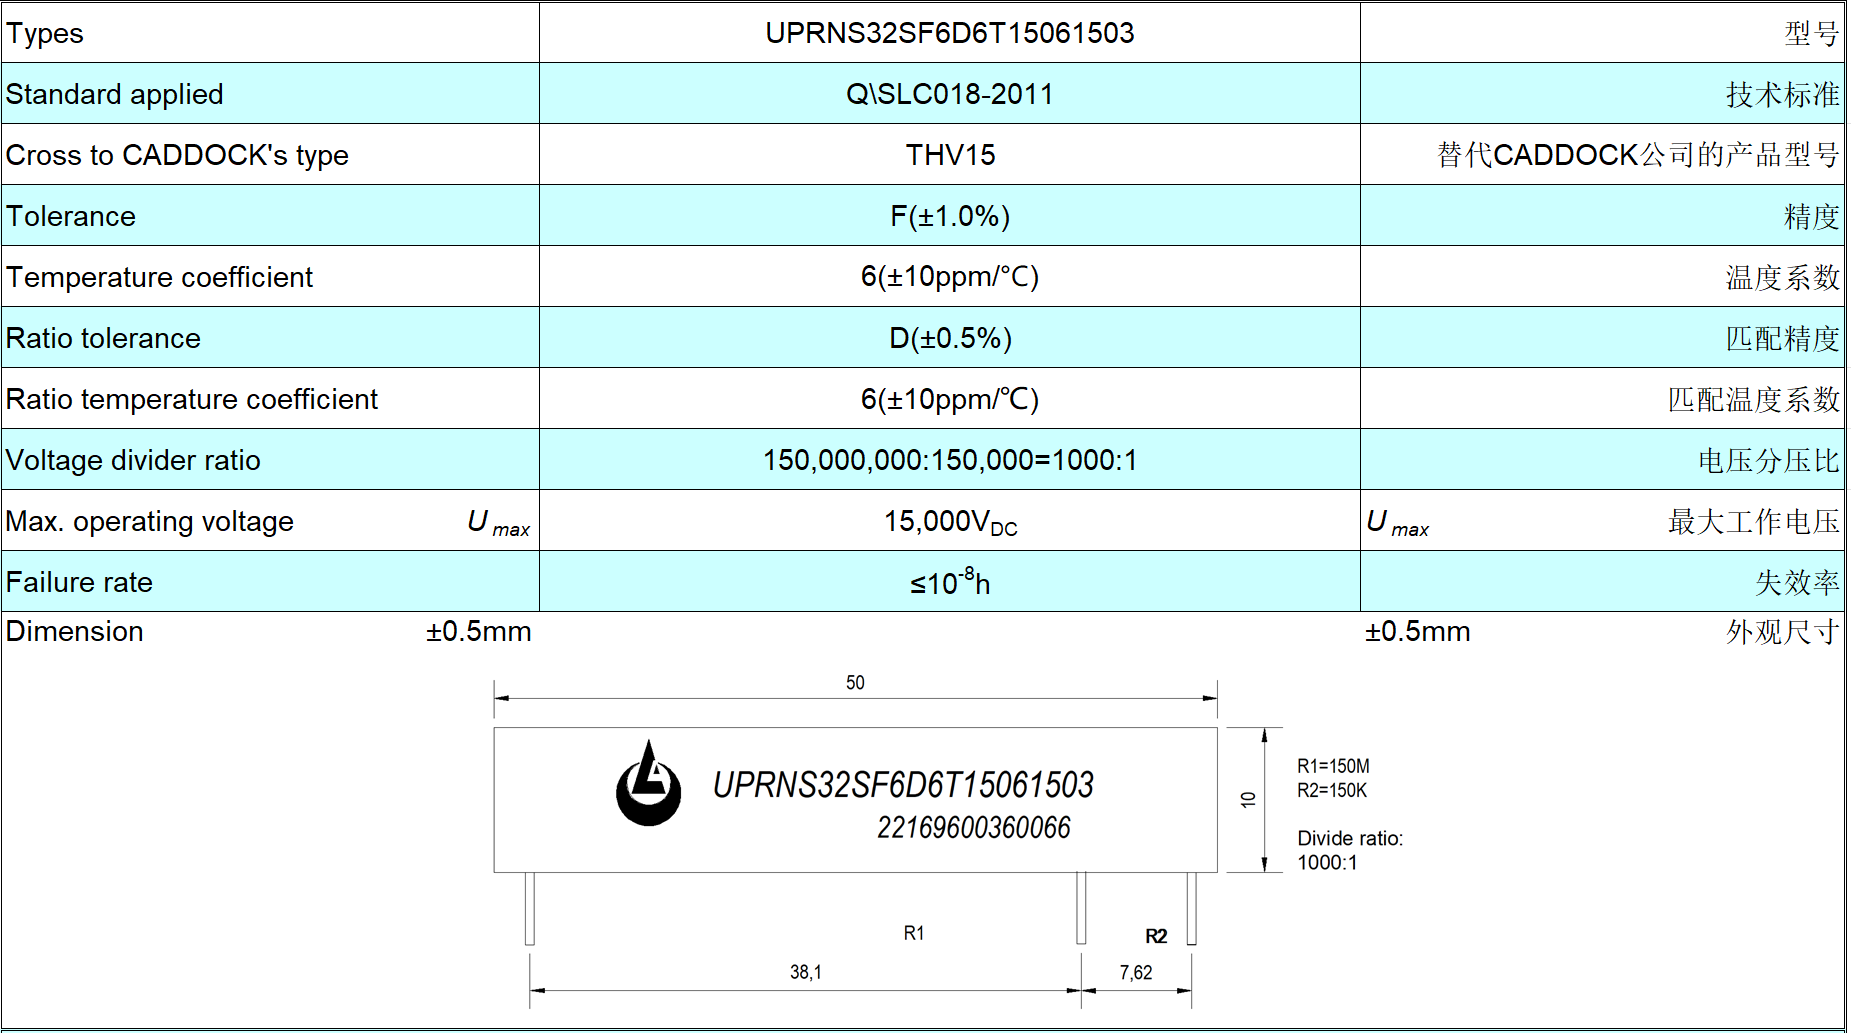 Mạng UPRNS32SF3D6T99951003 cung cấp dung sai tỷ lệ chặt chẽ hơn trên 0,5% so với THV15-A150M-1.0-10 của Caddock.